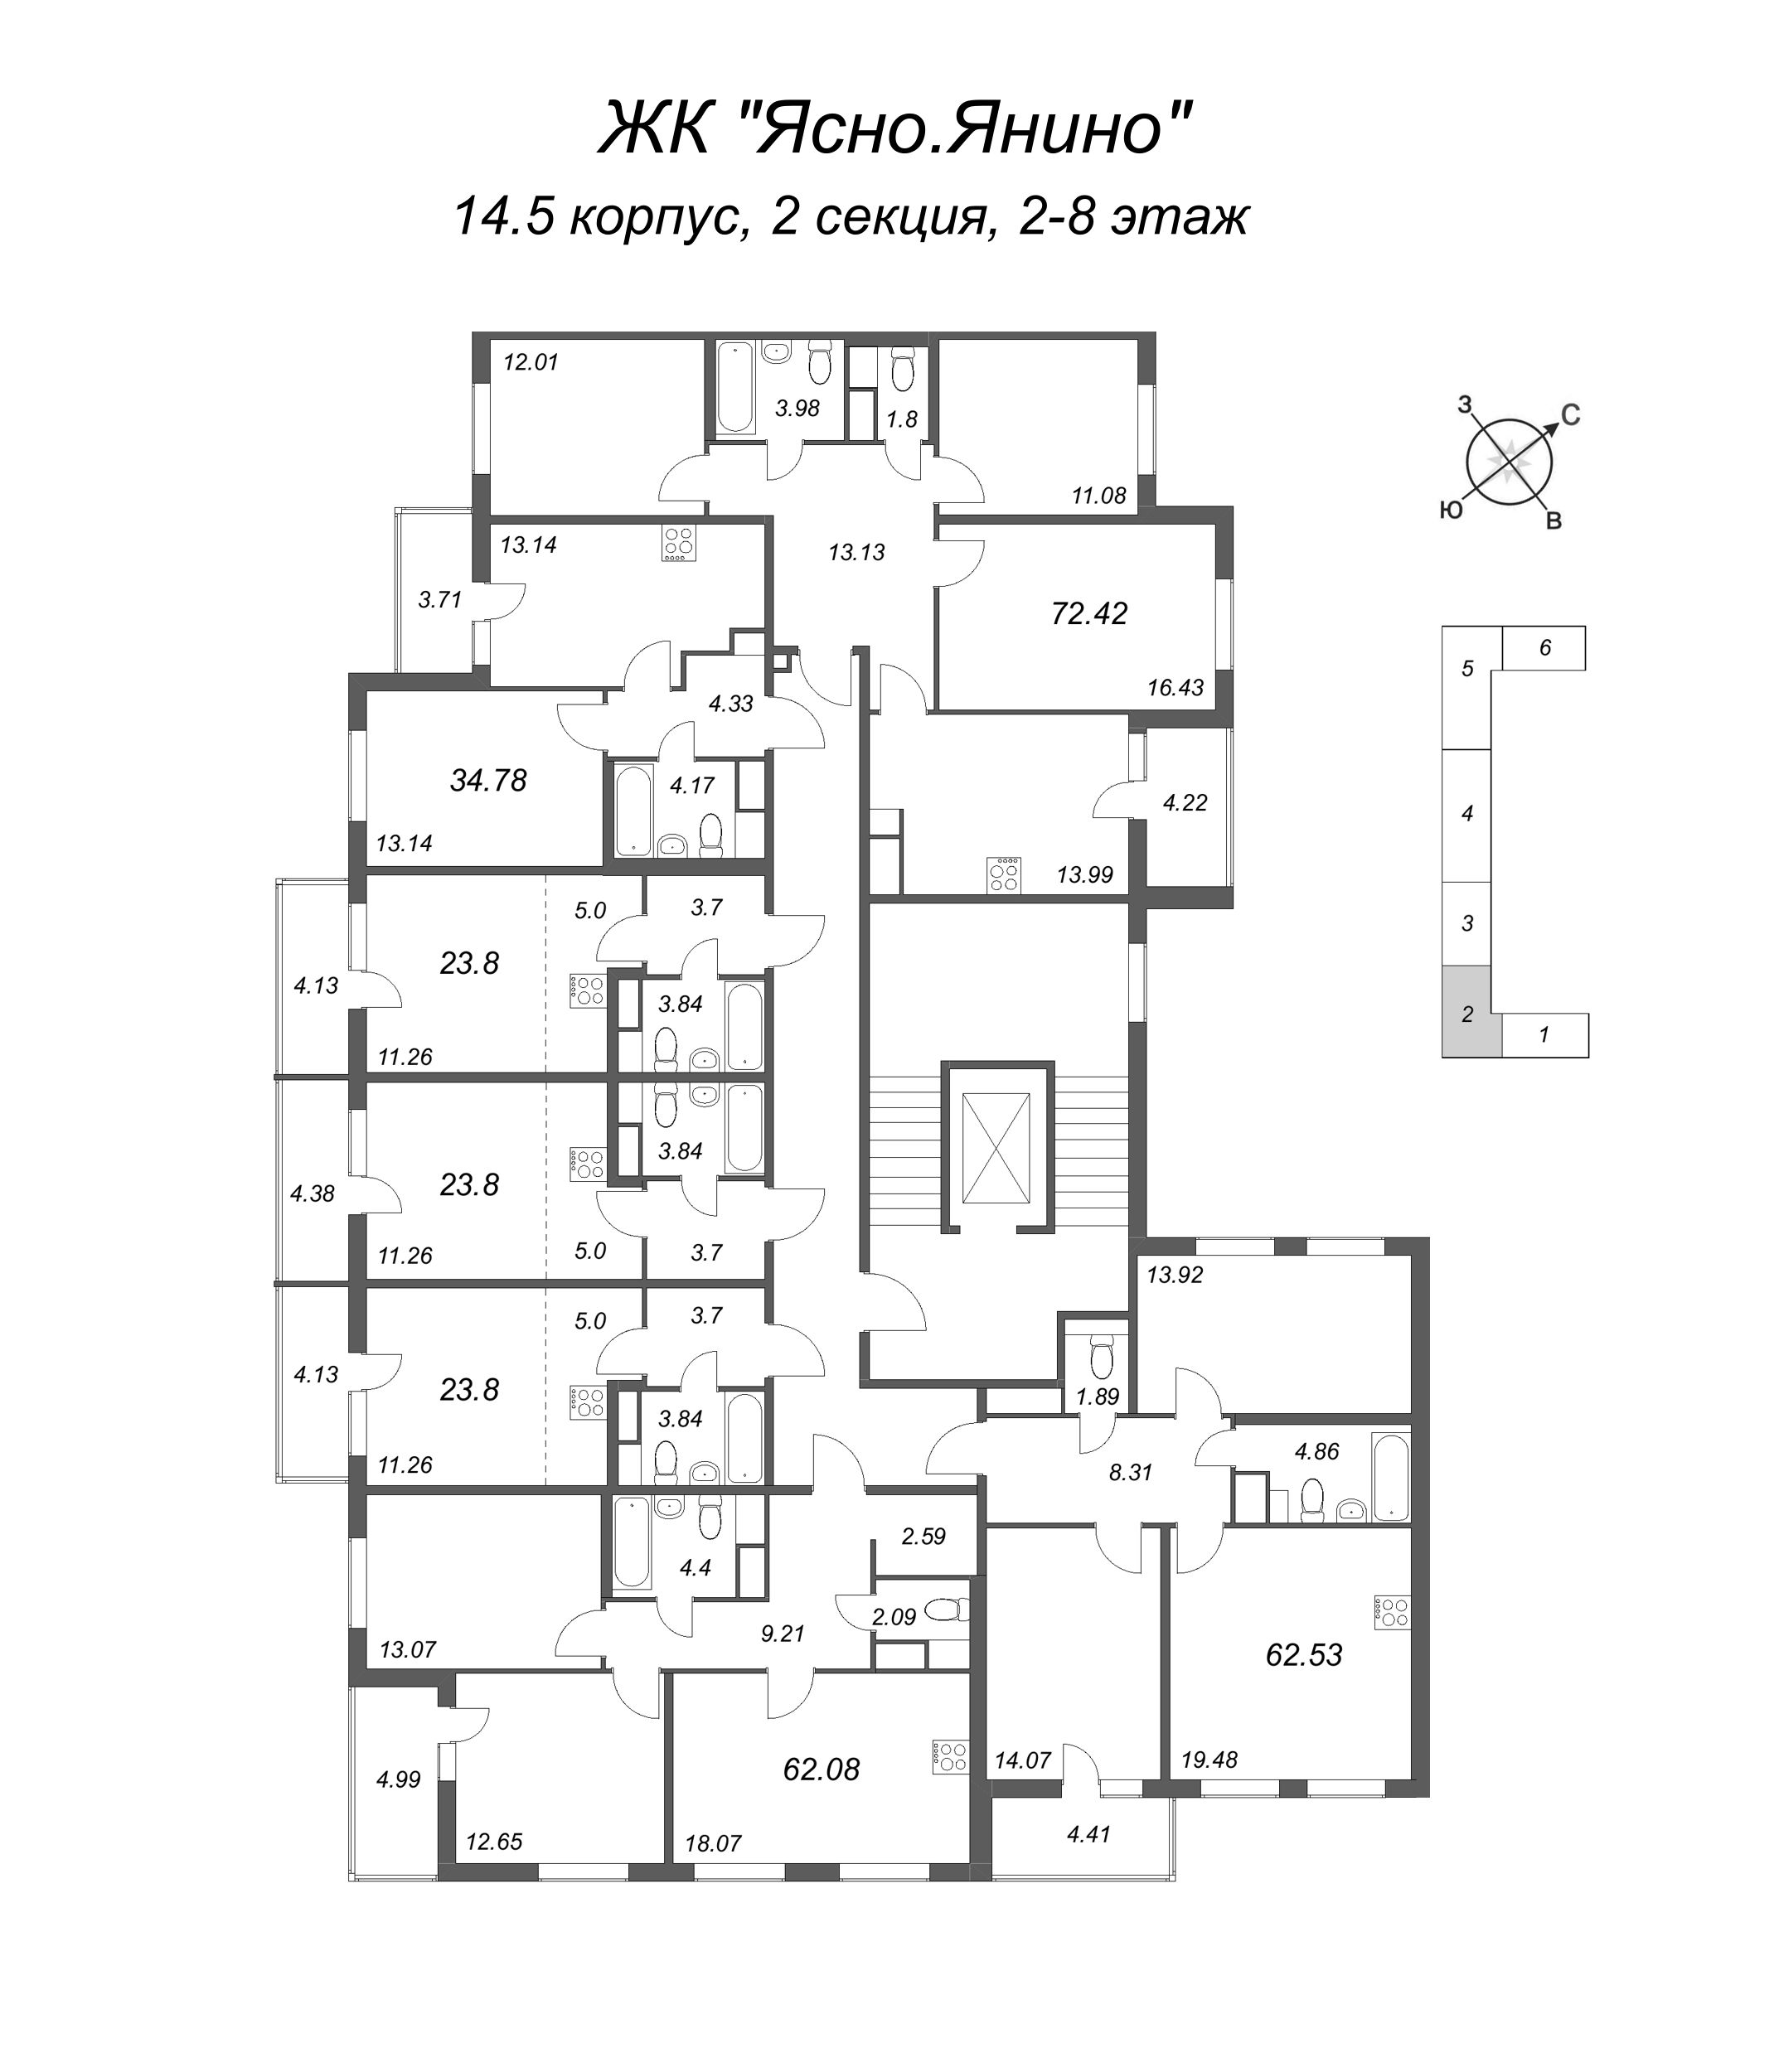 Квартира-студия, 23.8 м² в ЖК "Ясно.Янино" - планировка этажа